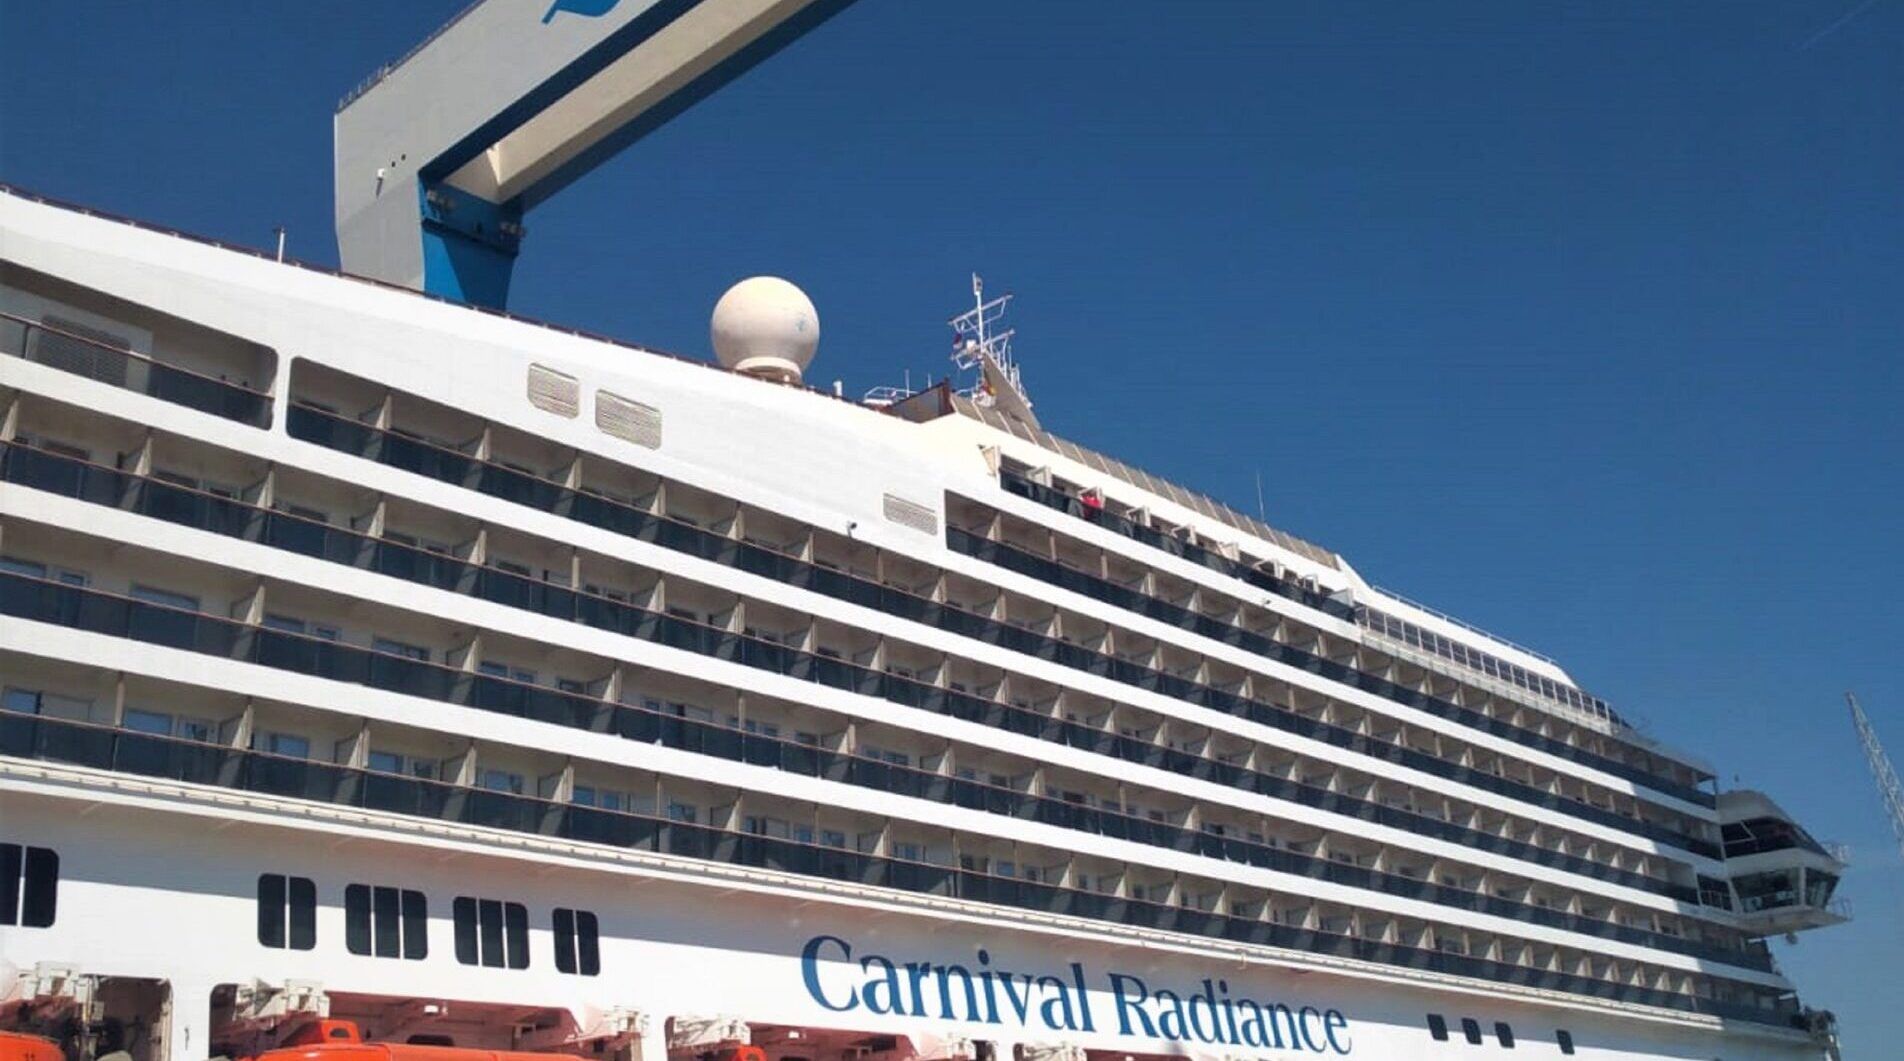 El crucero Carnival Radiance, en Navantia Cádiz.